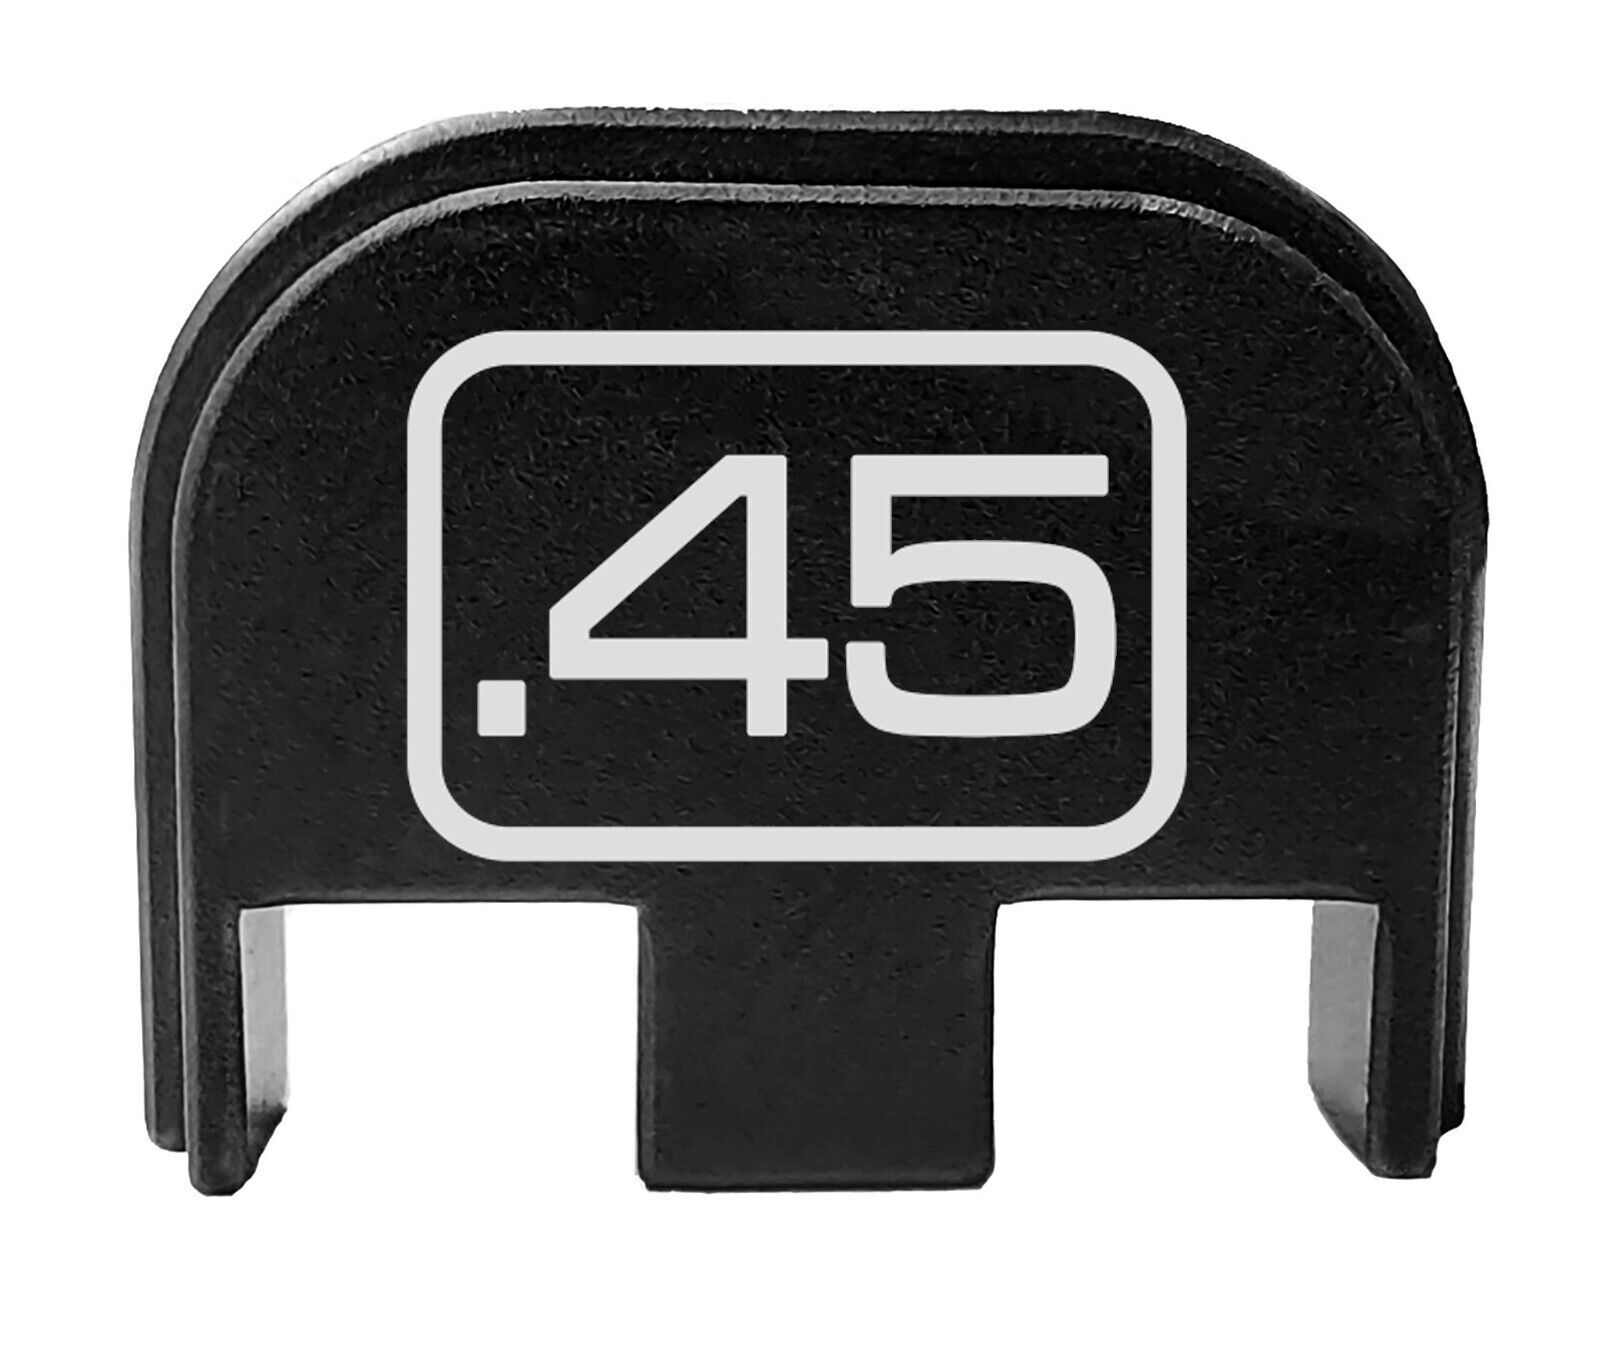 Rear Slide Back Cover Plate for Glock G21 G30 G36 G41 g37 g38 g39 .45 Cal Number